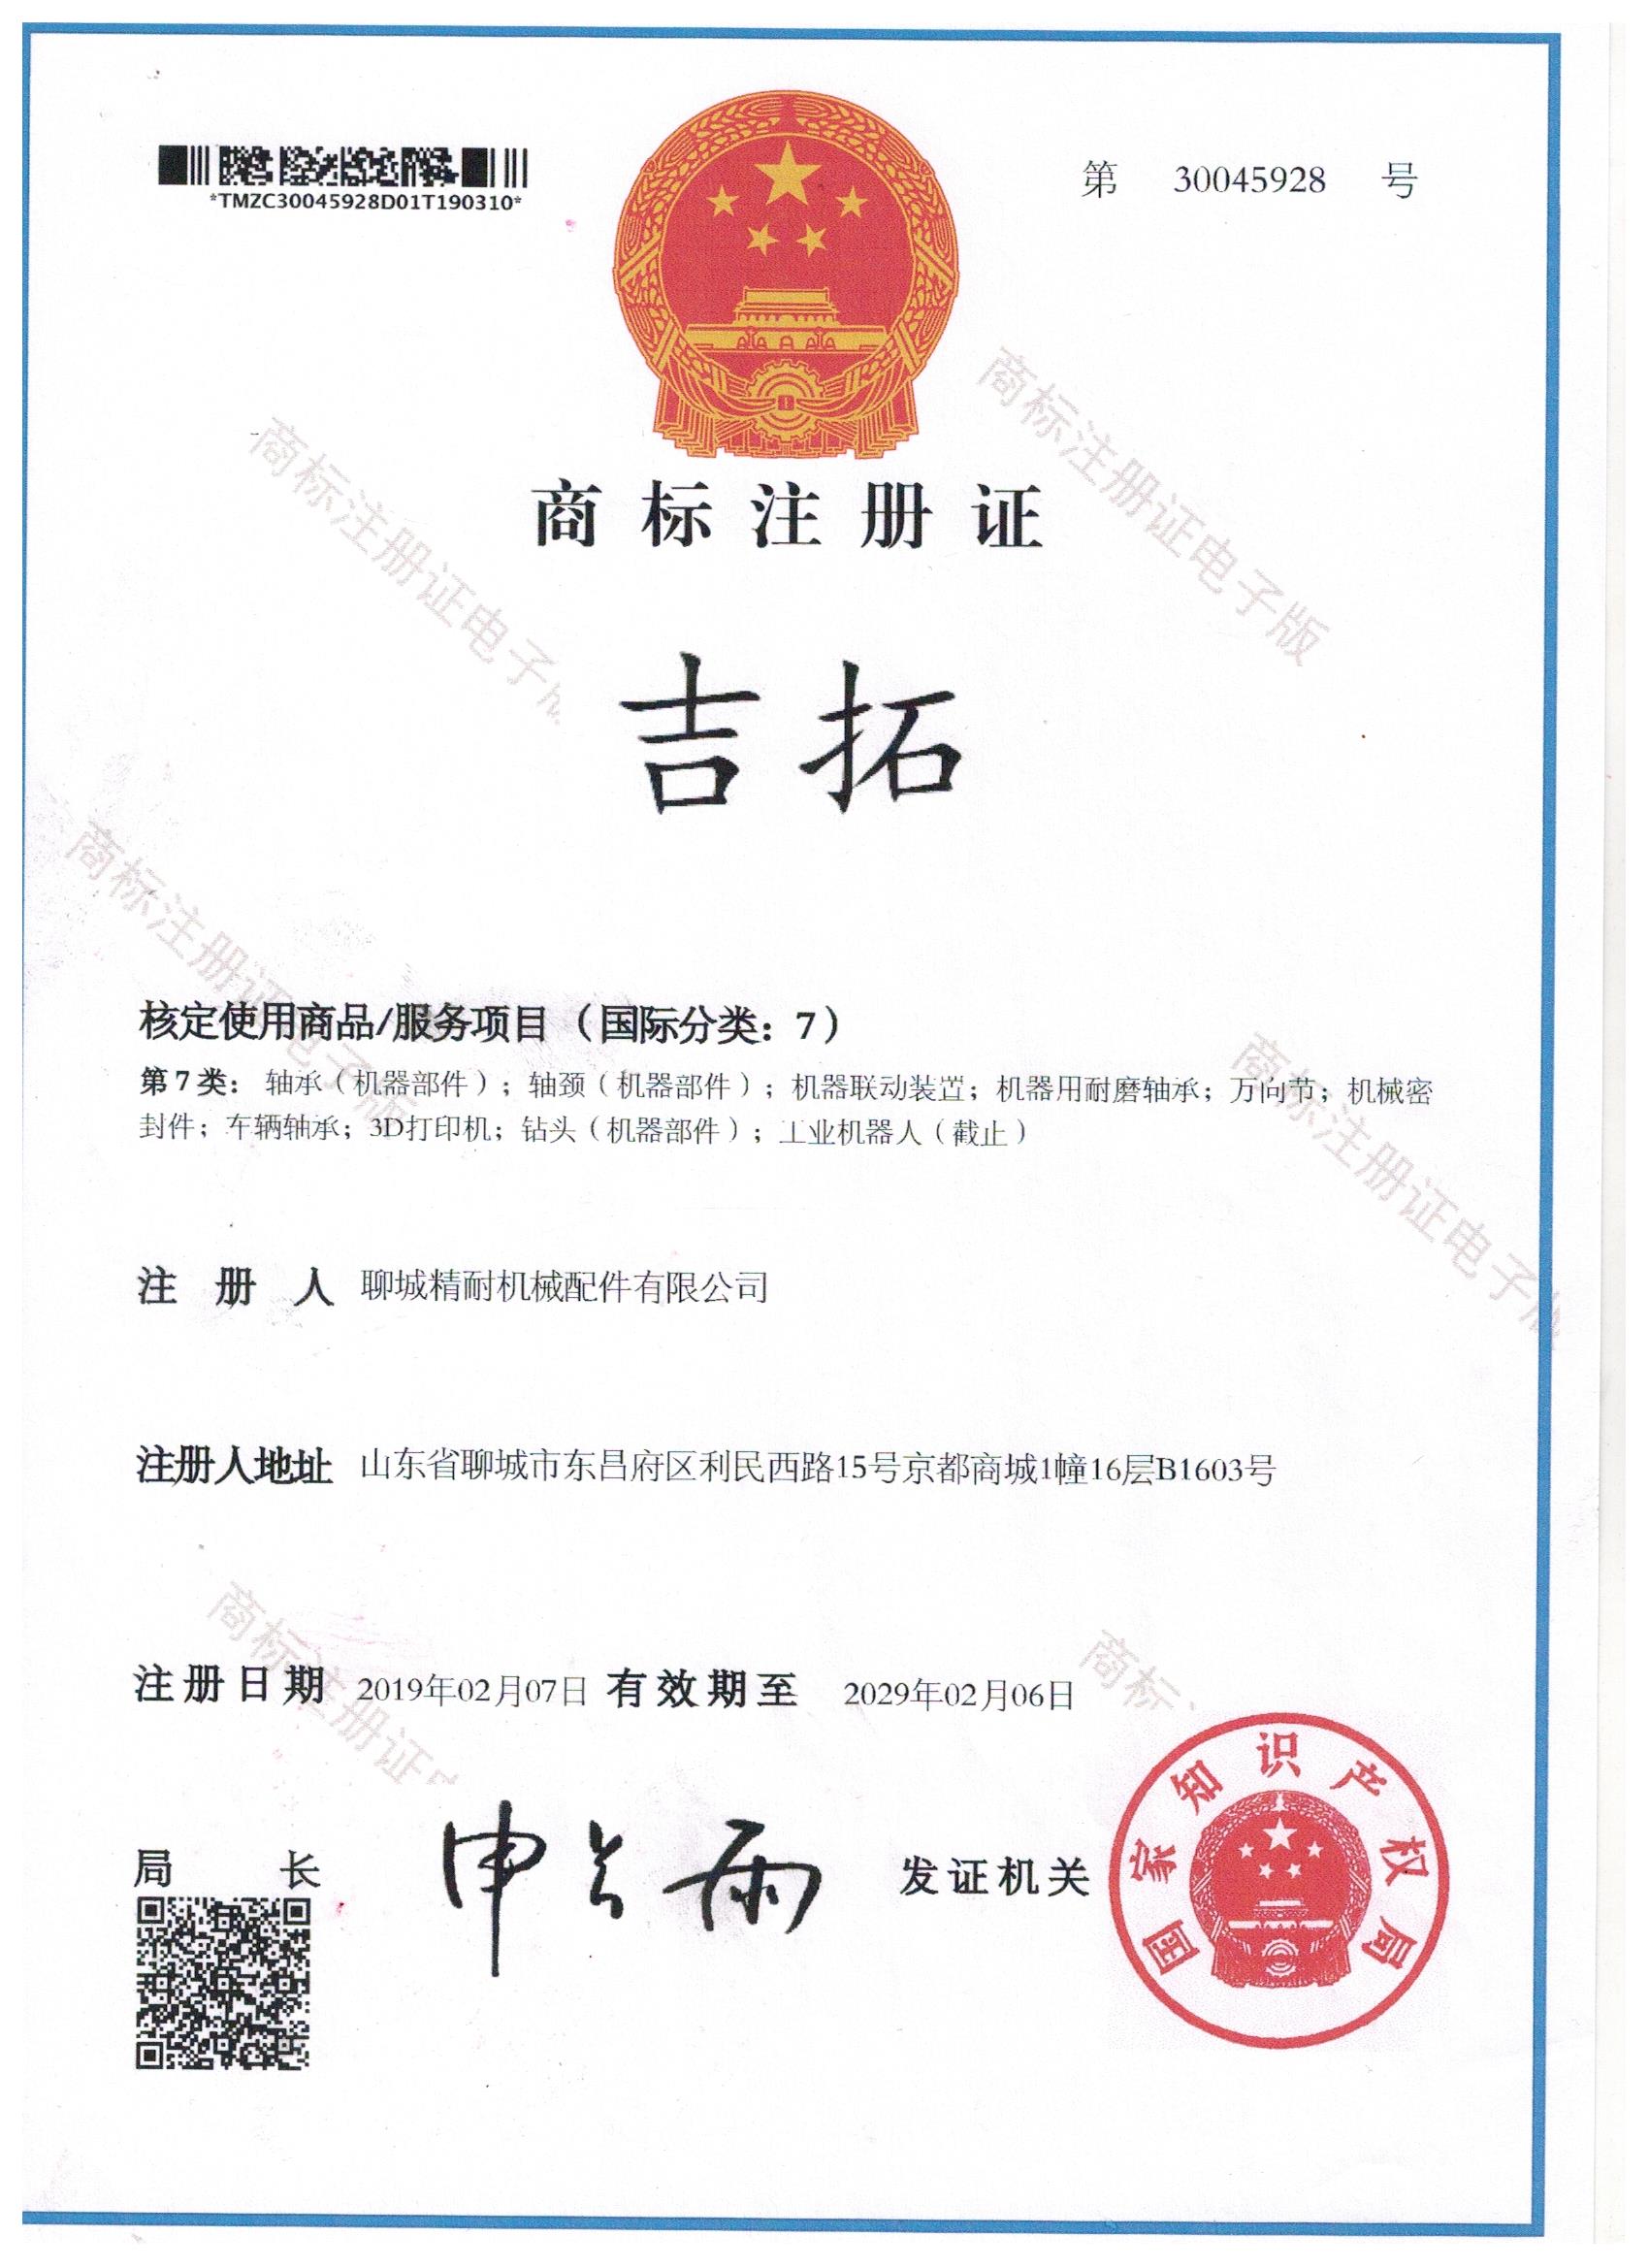 JITO certification